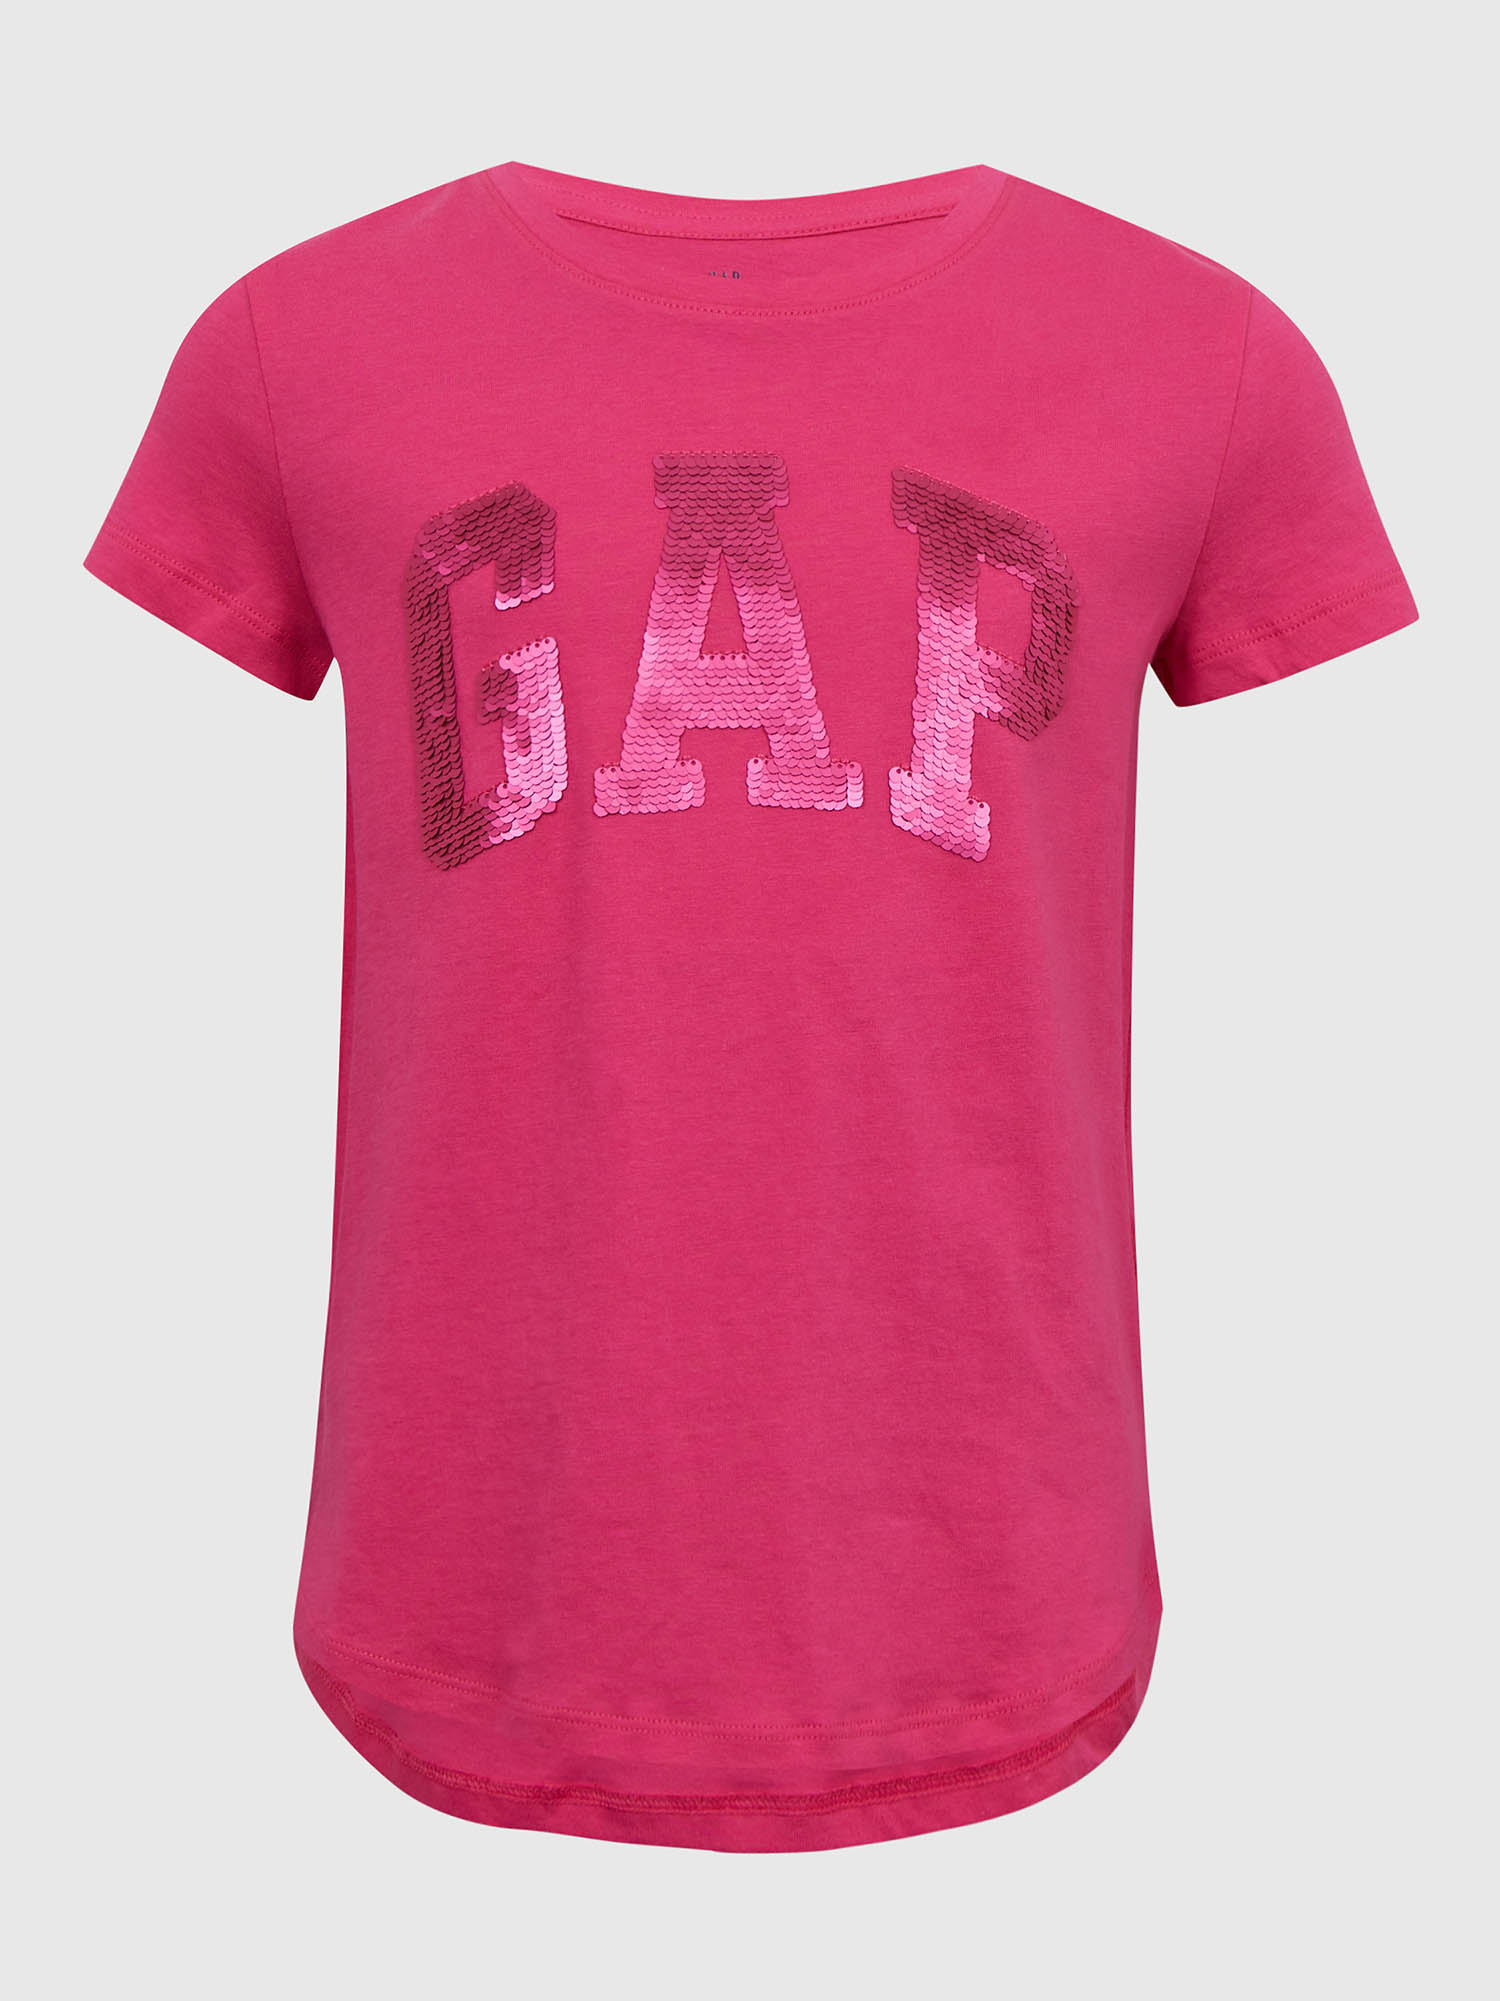 Tmavě růžové holčičí bavlněné tričko s logem GAP